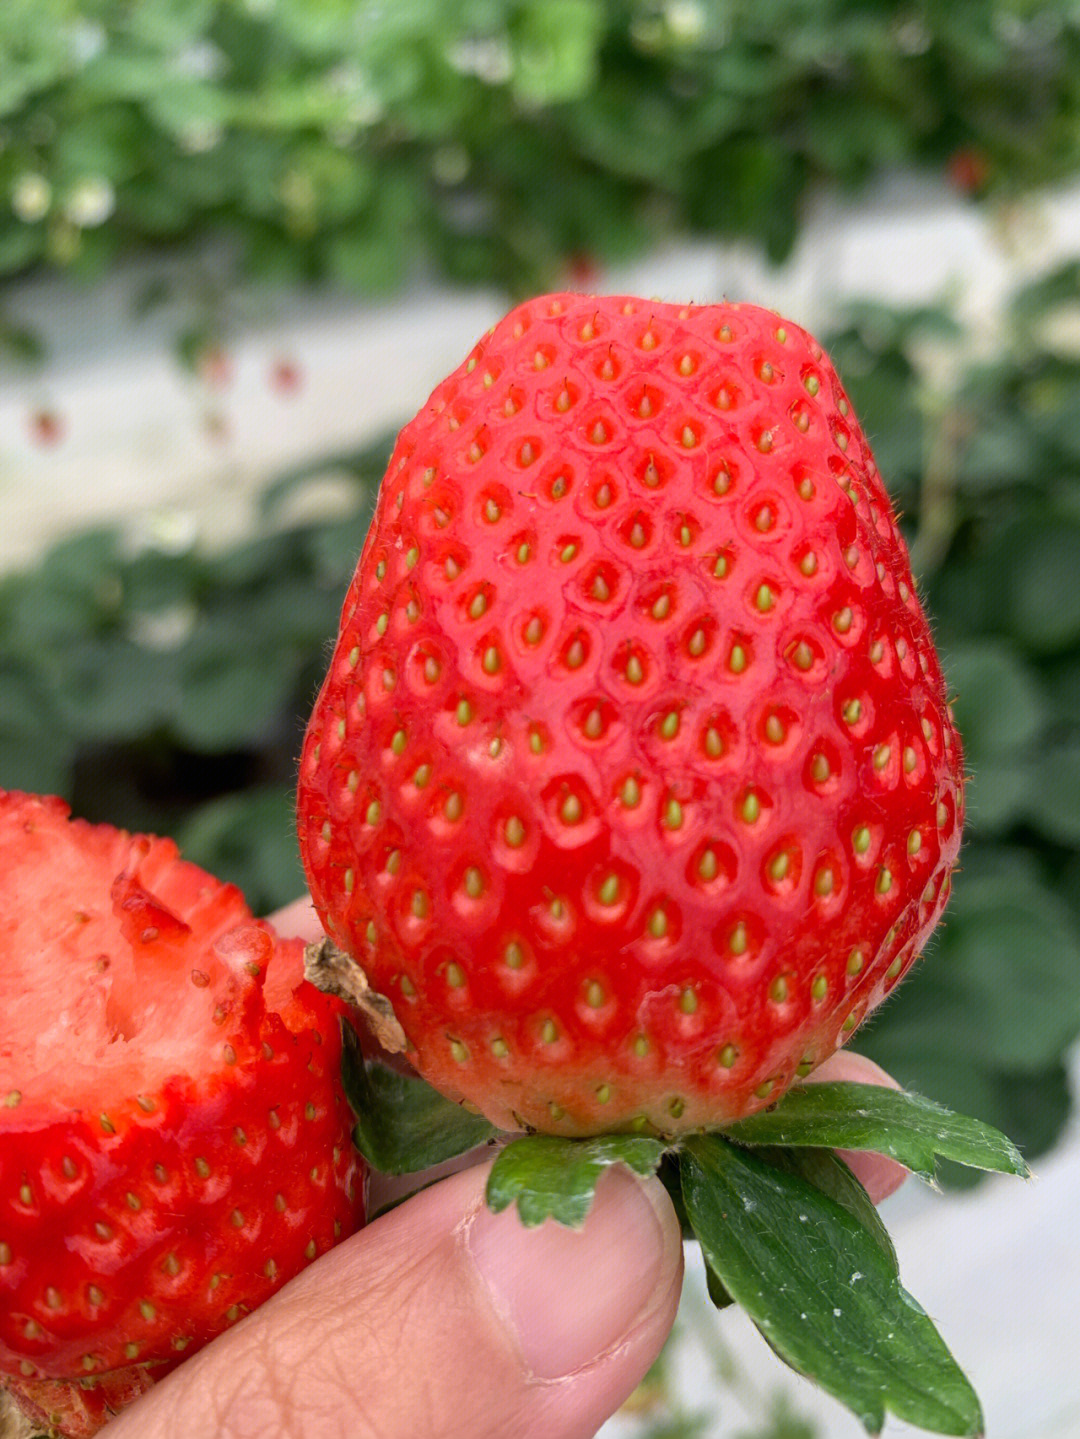 售价100元一斤的日本香野草莓